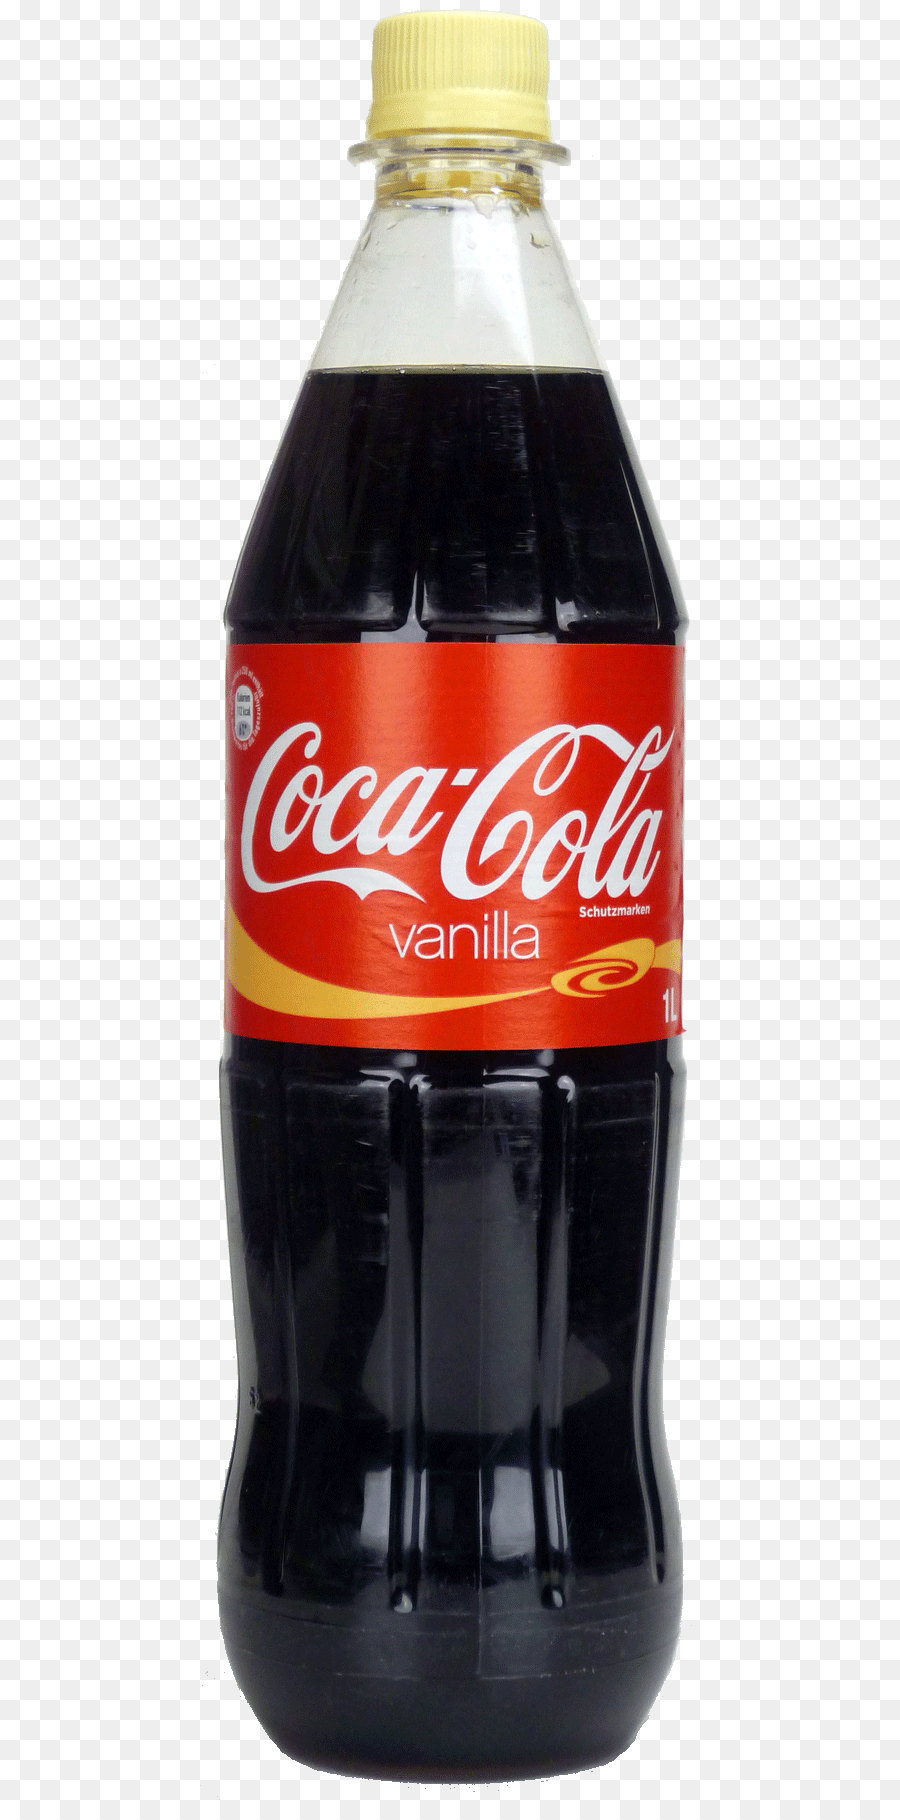 Coca Cola Cherry Soft Drink Diet Coke   Coca Cola Bottle Png Image - Cola Bottle, Transparent background PNG HD thumbnail